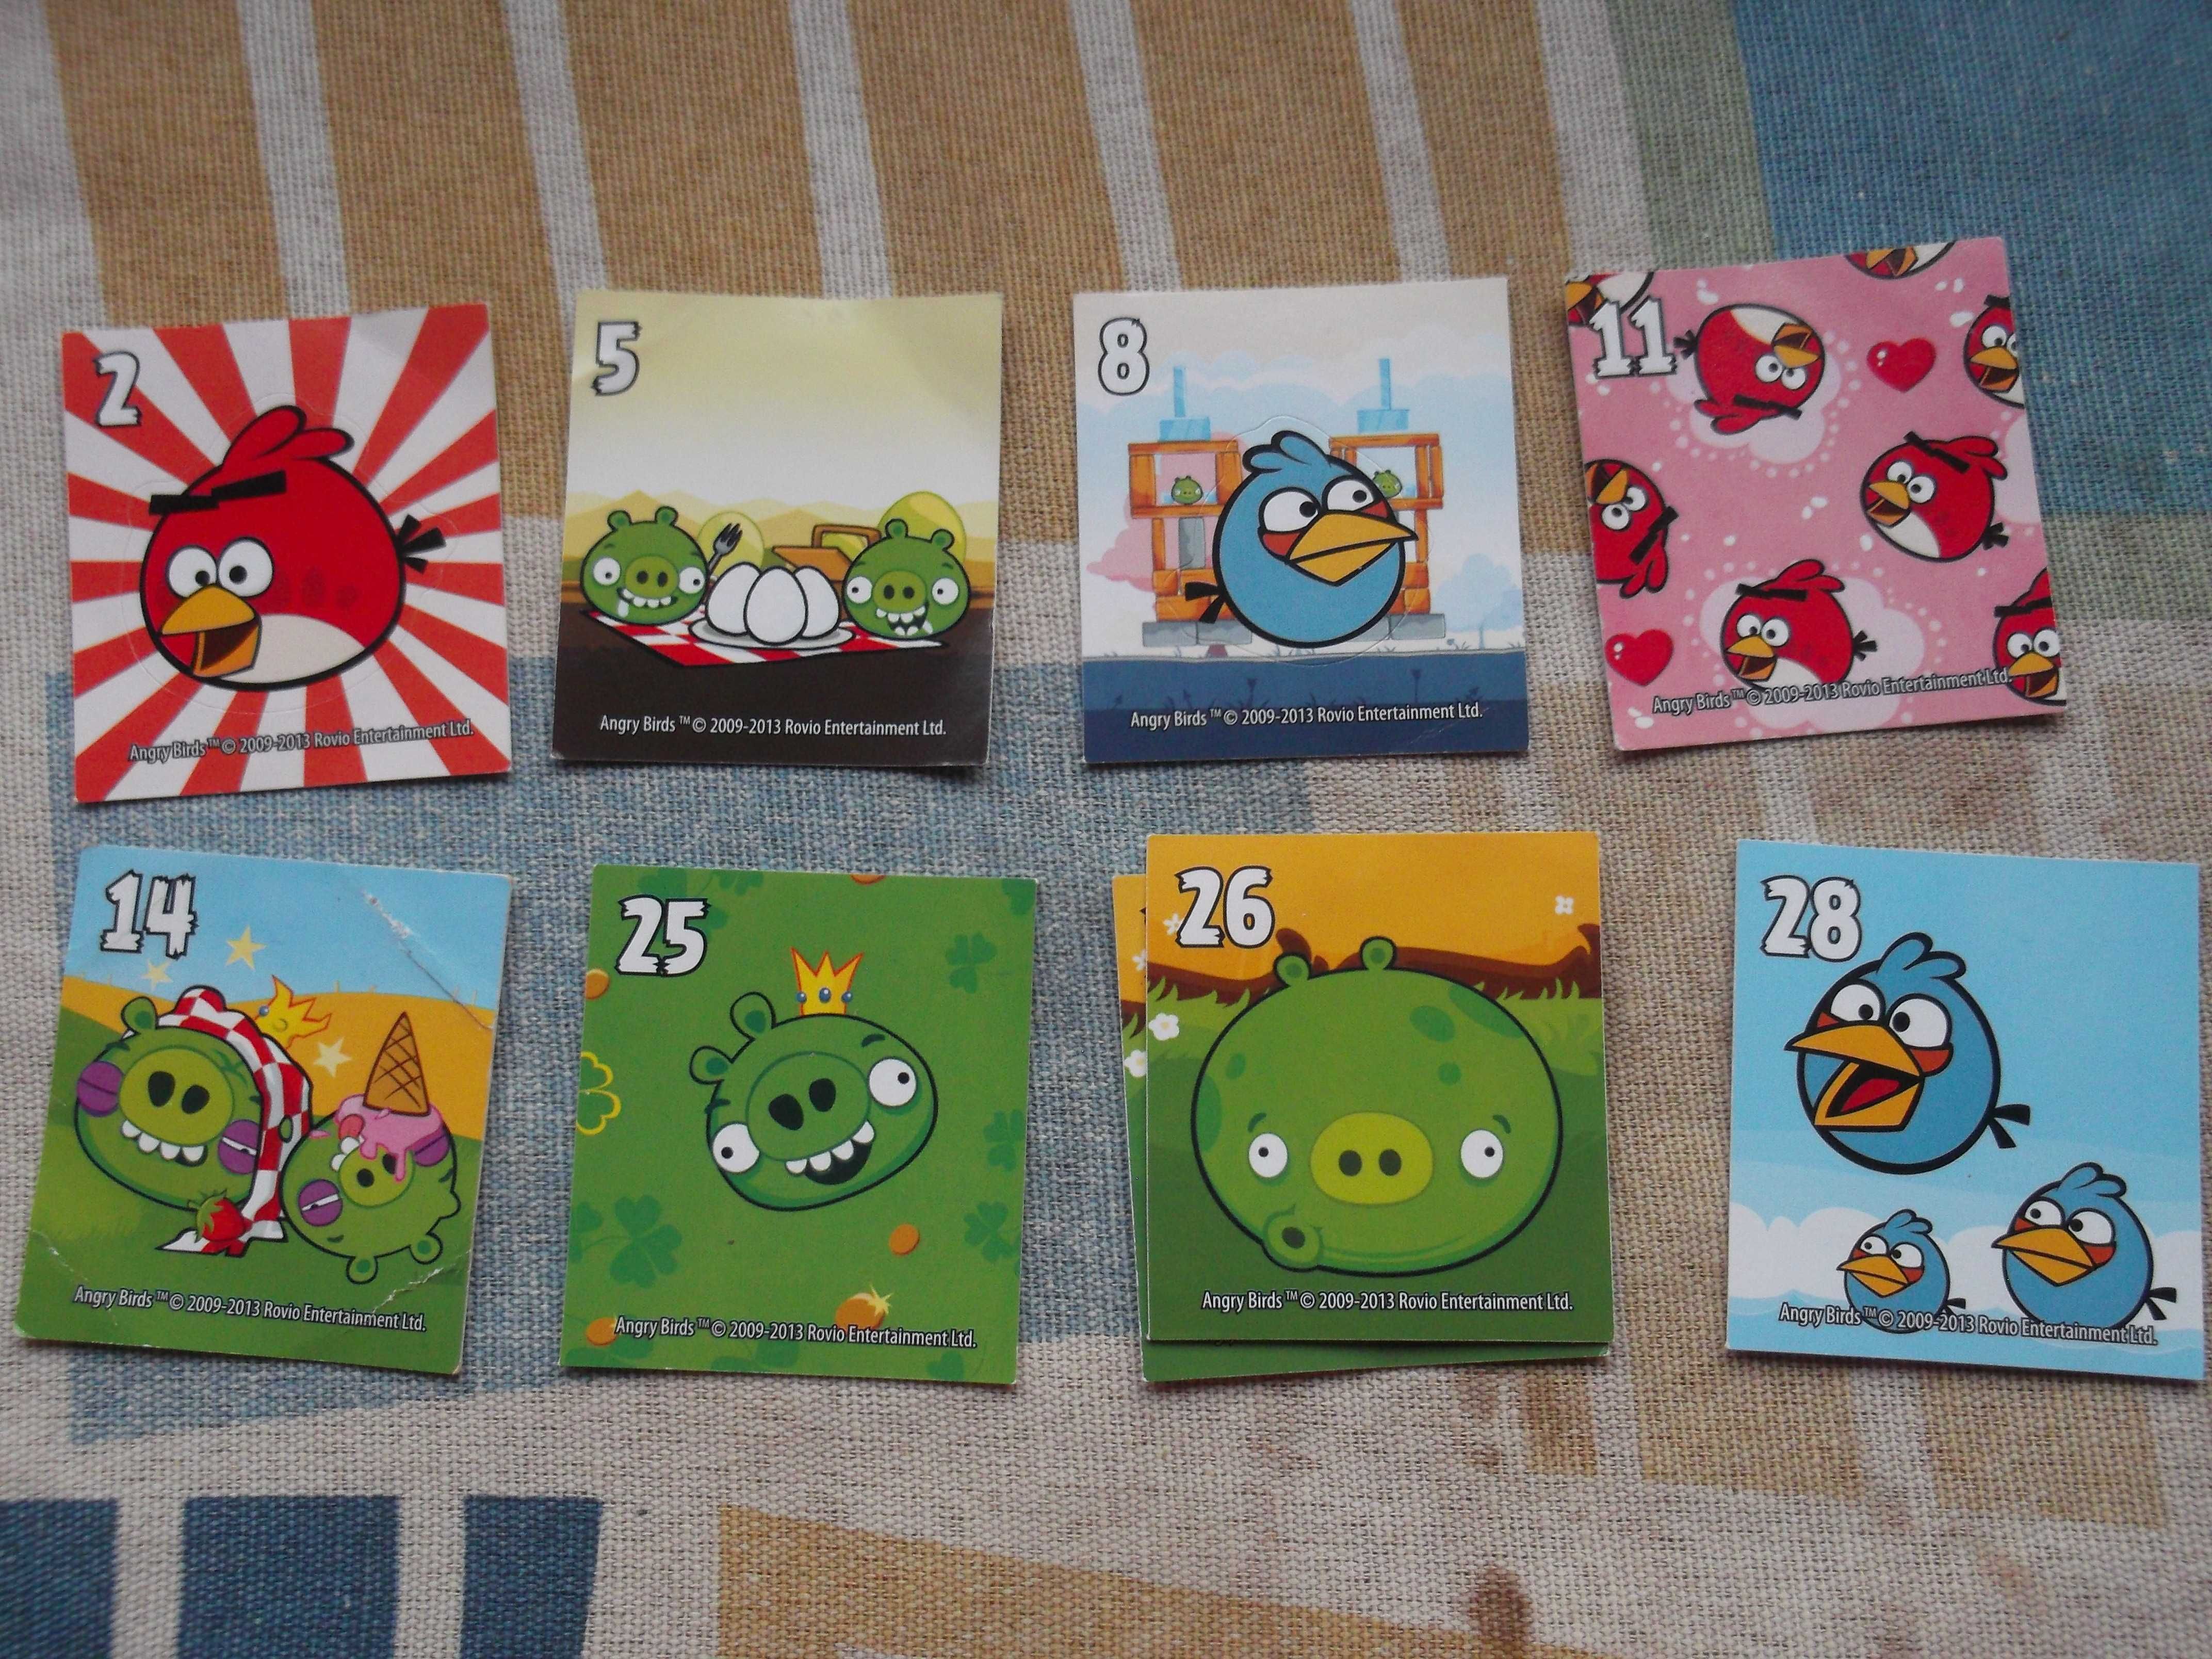 Tazos da Angry Birds